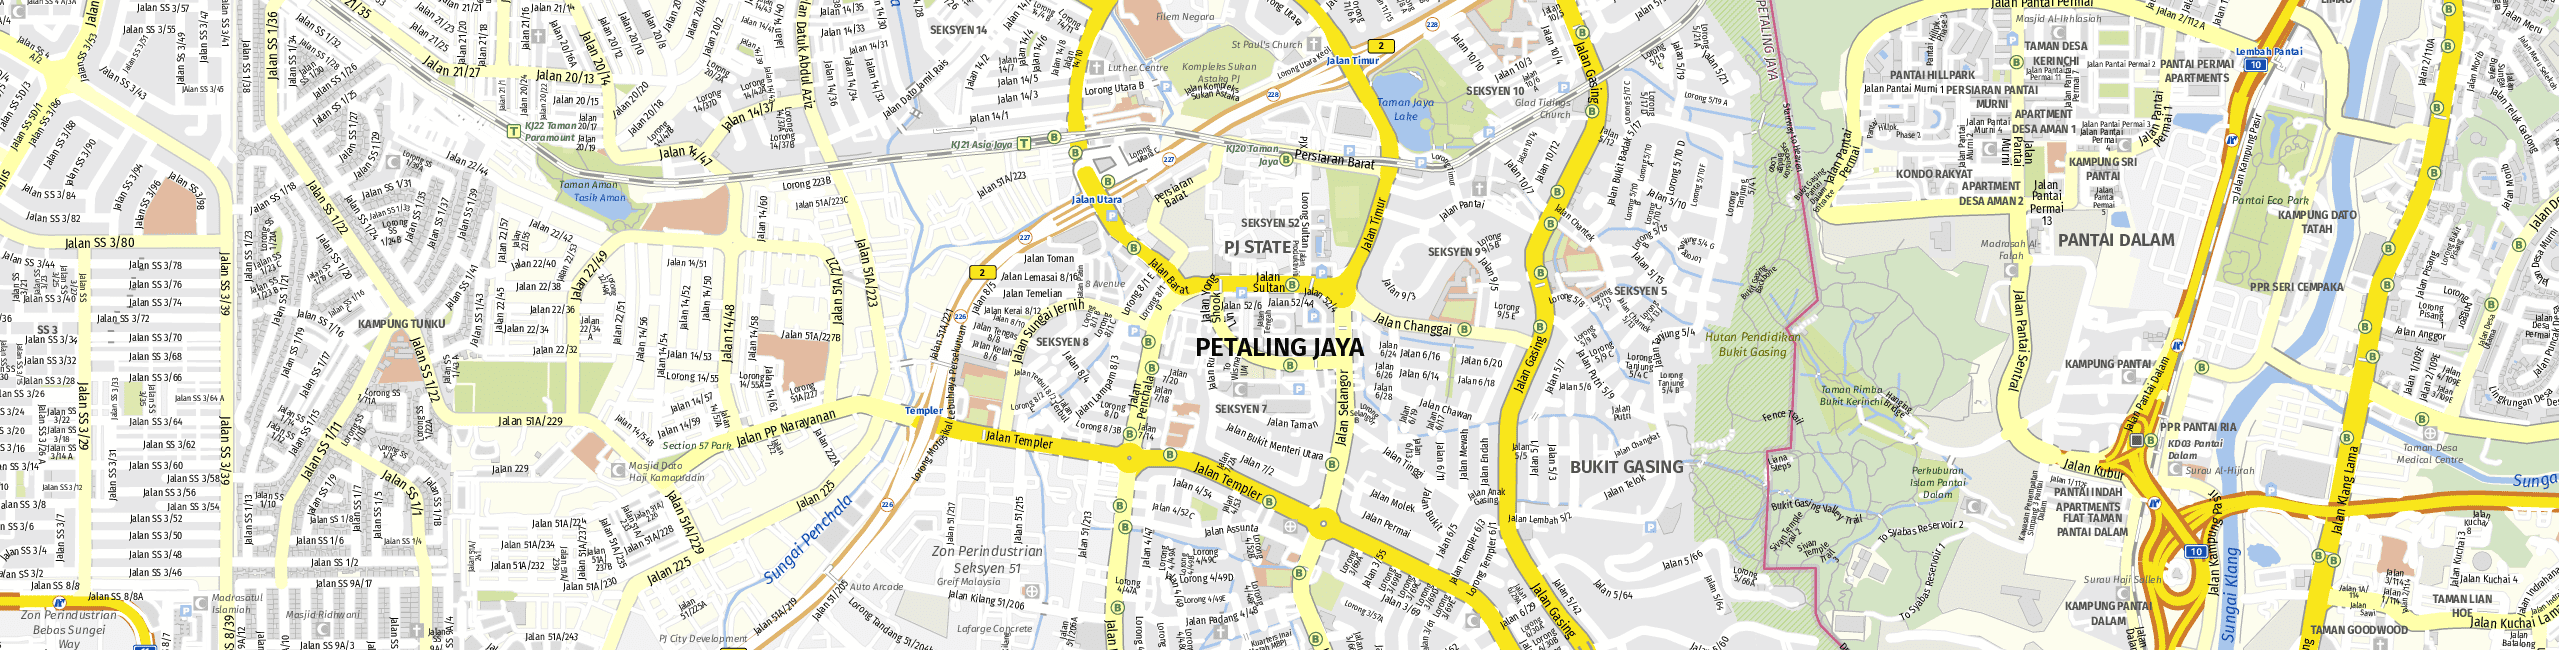 Stadtplan Petaling Jaya zum Downloaden.